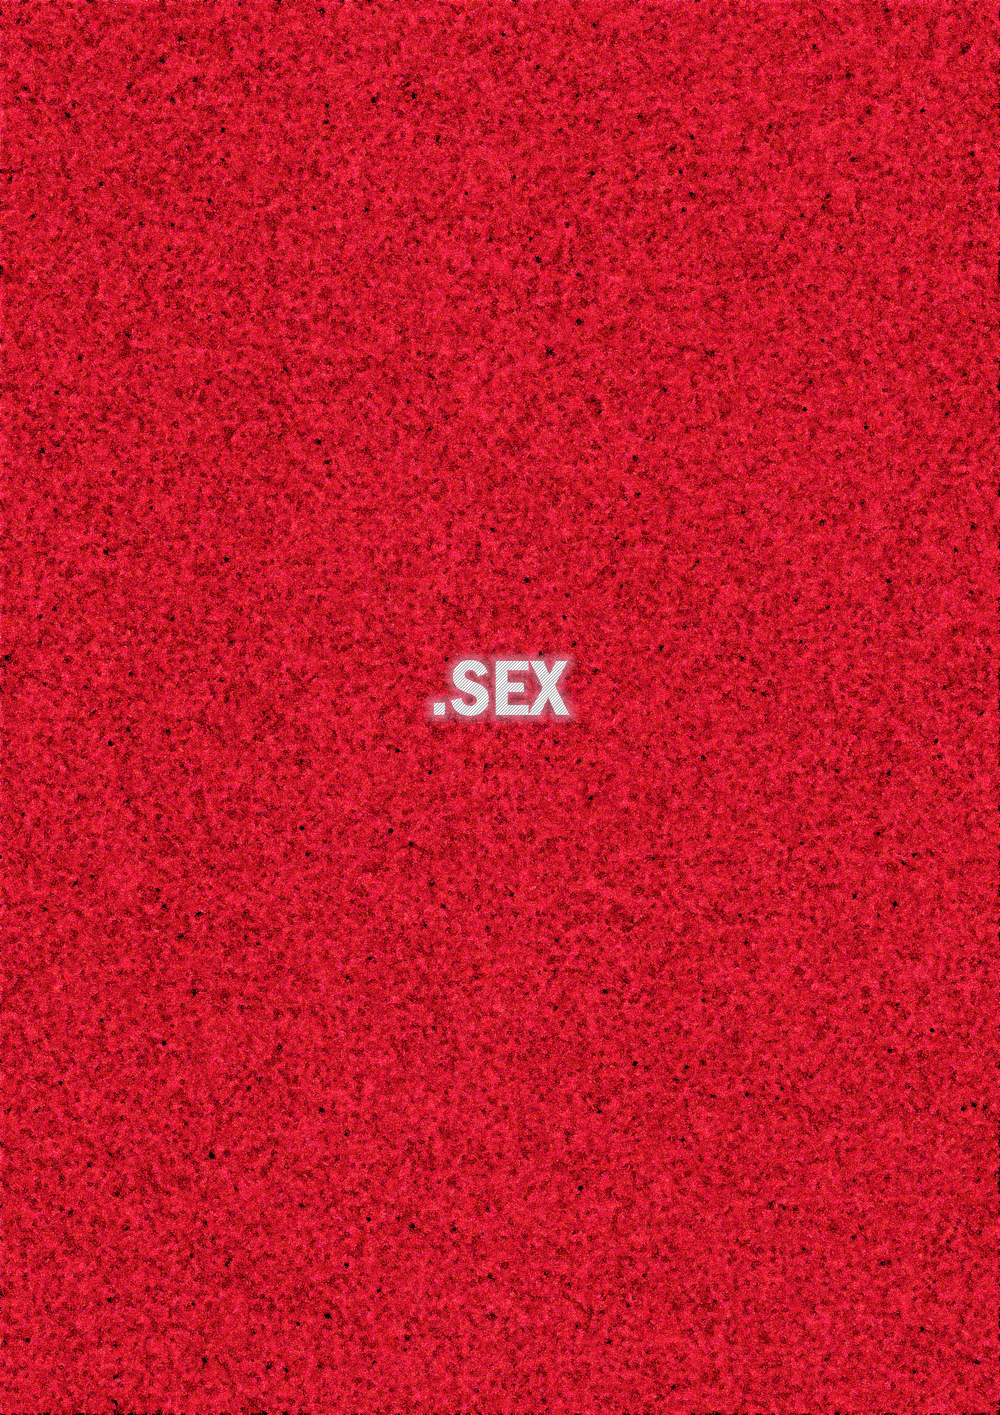 Sex Words Opensea 4817